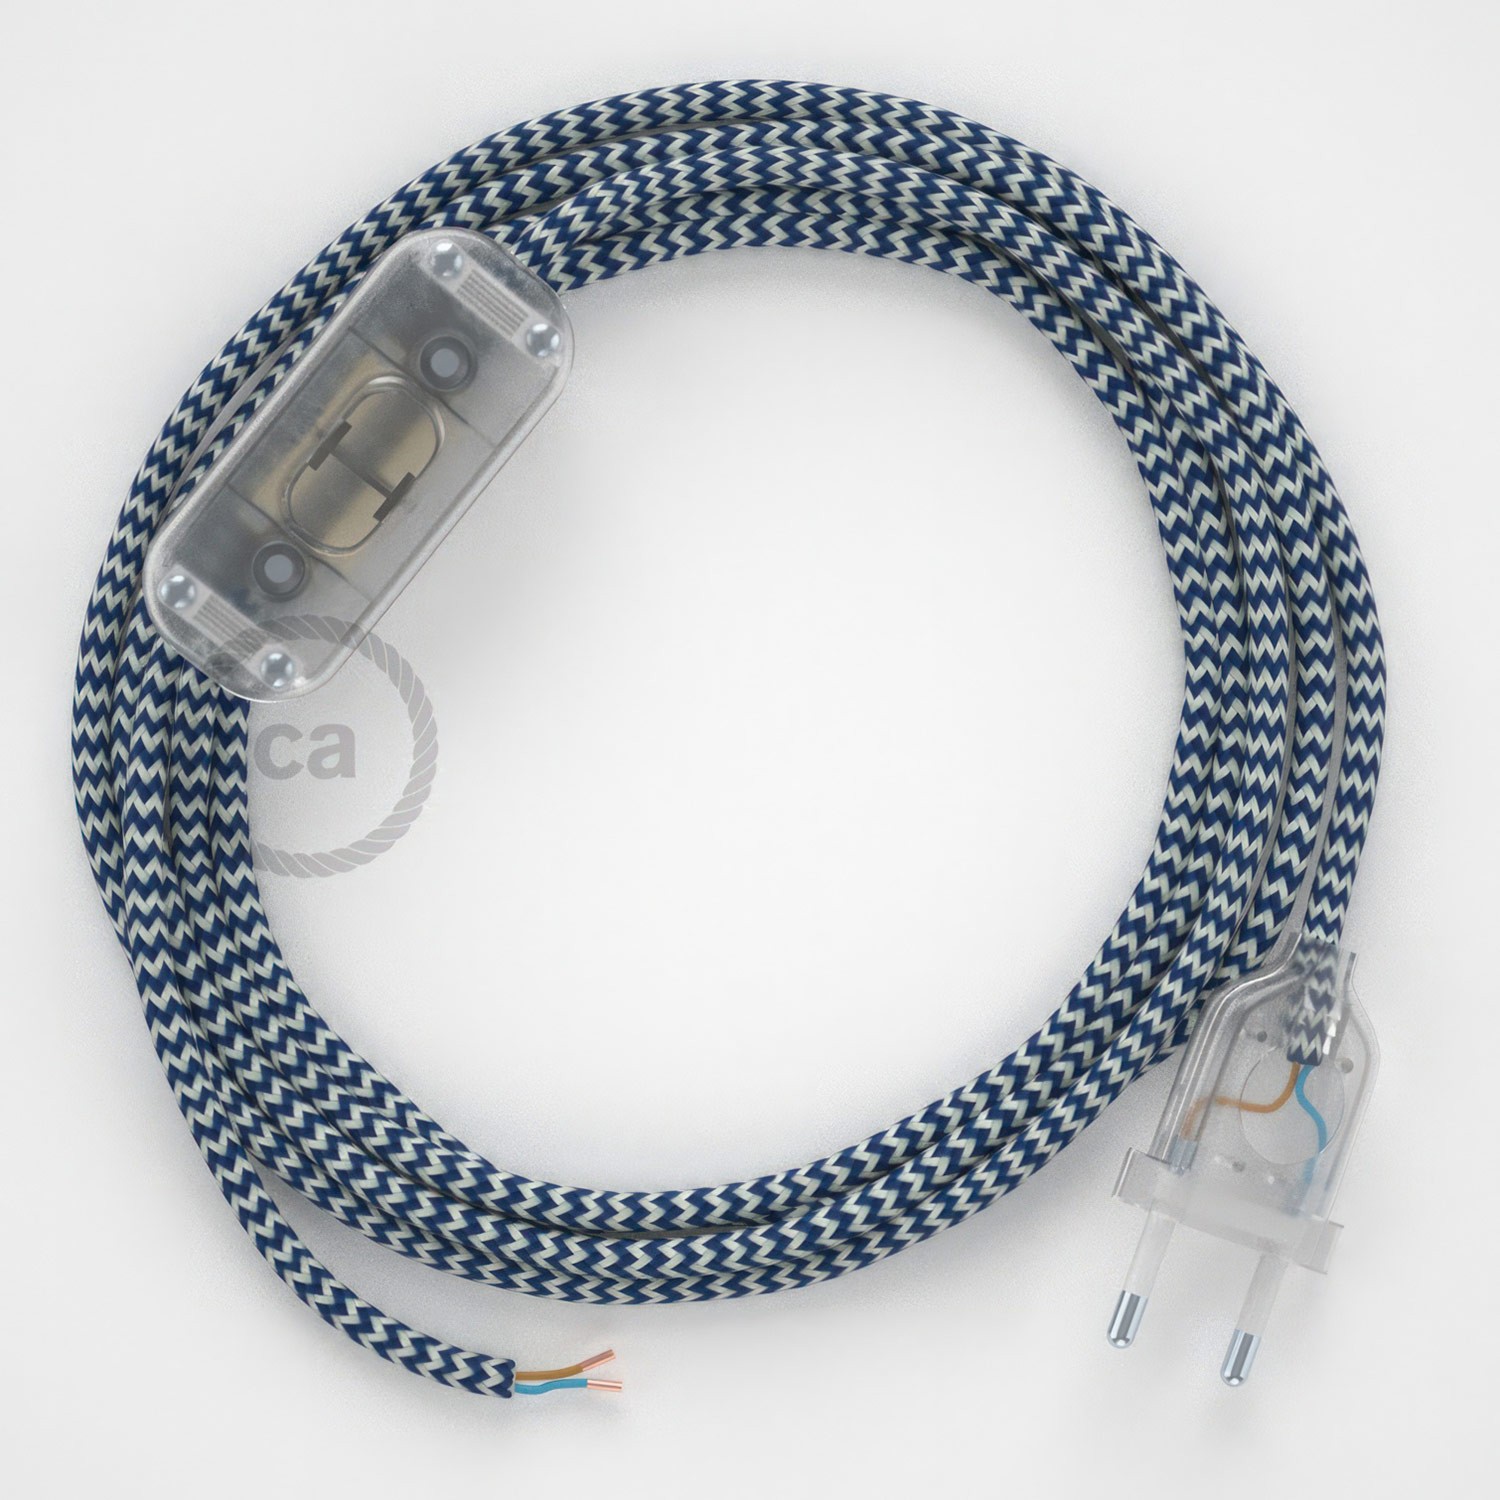 Cableado para lámpara, cable RZ12 Efecto Seda ZigZag Blanco Azul 1,8m. Elige tu el color de la clavija y del interruptor!